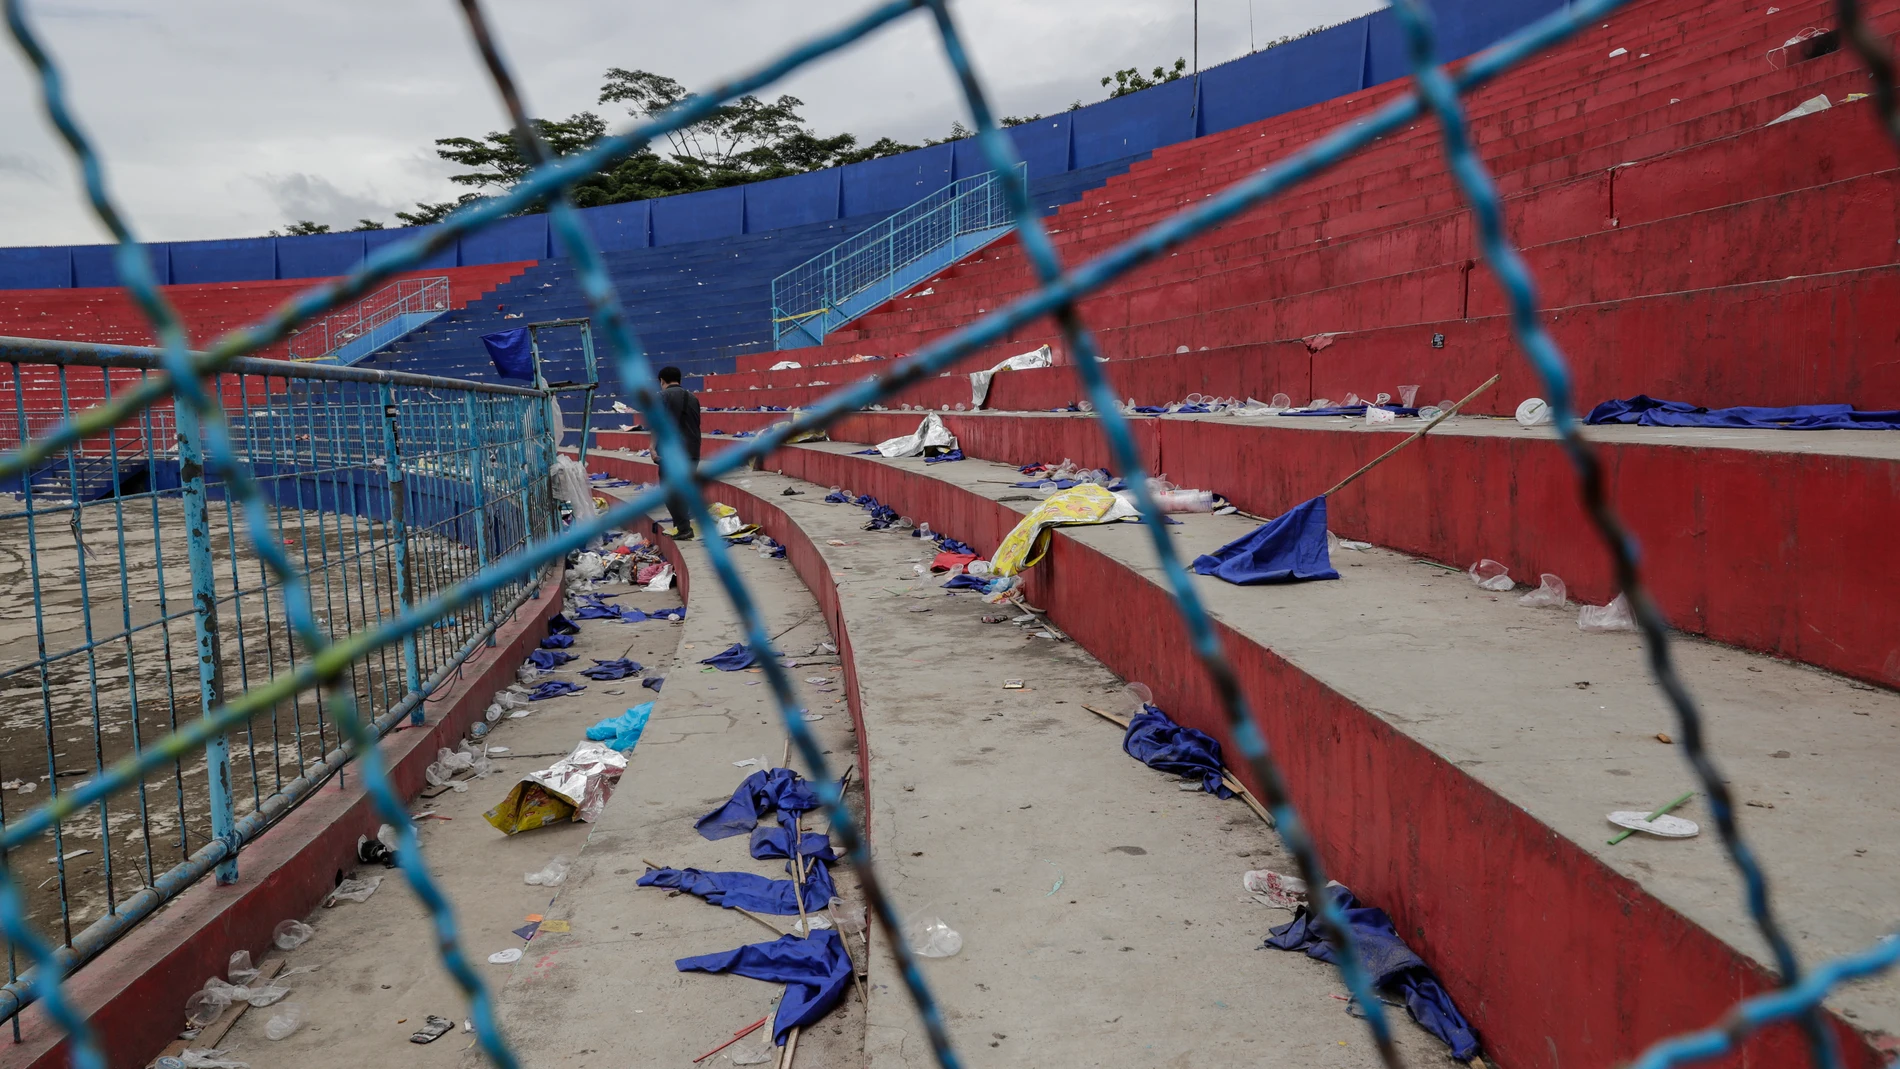 El estadio de Indonesia en el que ocurrió la tragedia, tras los hechos